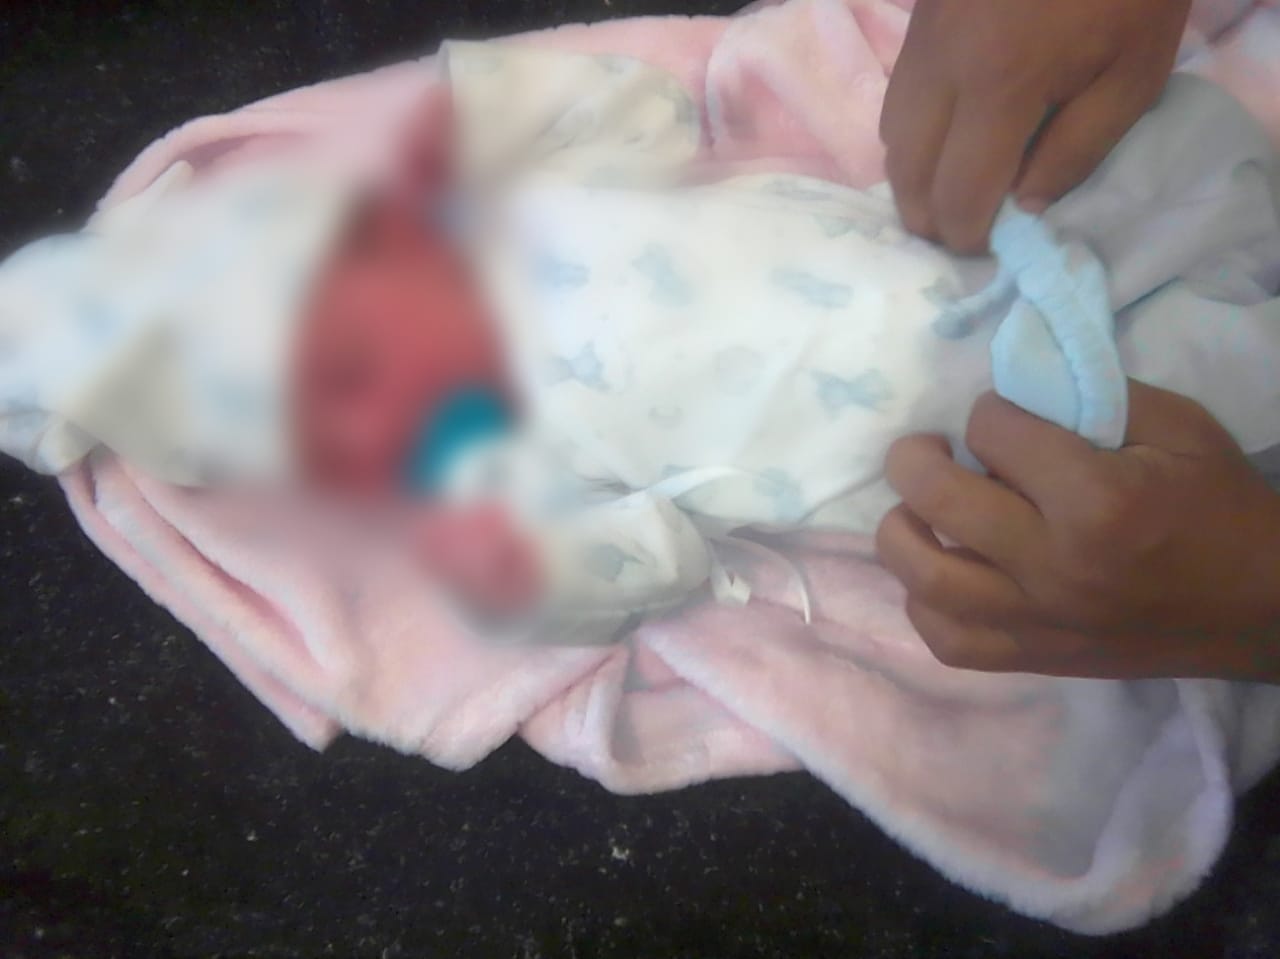 Villa Bonita: La Policía asistió a joven embarazada que dio a luz a Lucía imagen-1